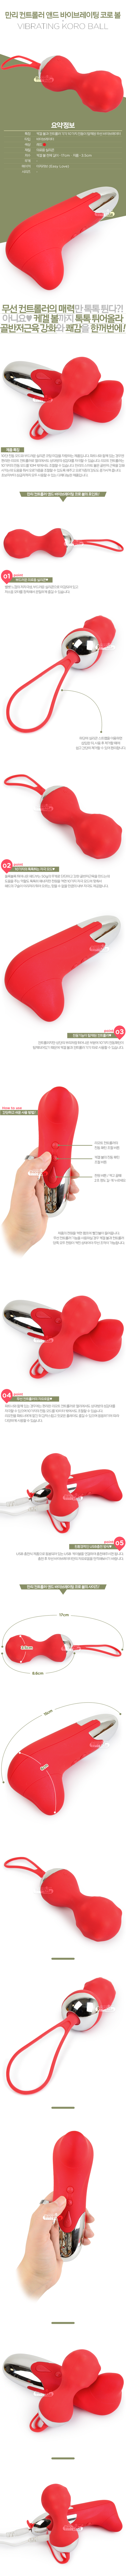 [10단 무선 진동 케겔볼] 만리 컨트롤러 앤드 바이브레이팅 코로 볼(Easy Love Manli Controller and Vibrating Koro Ball) - USB충전식/이지러브(6928407800365) (SAH)